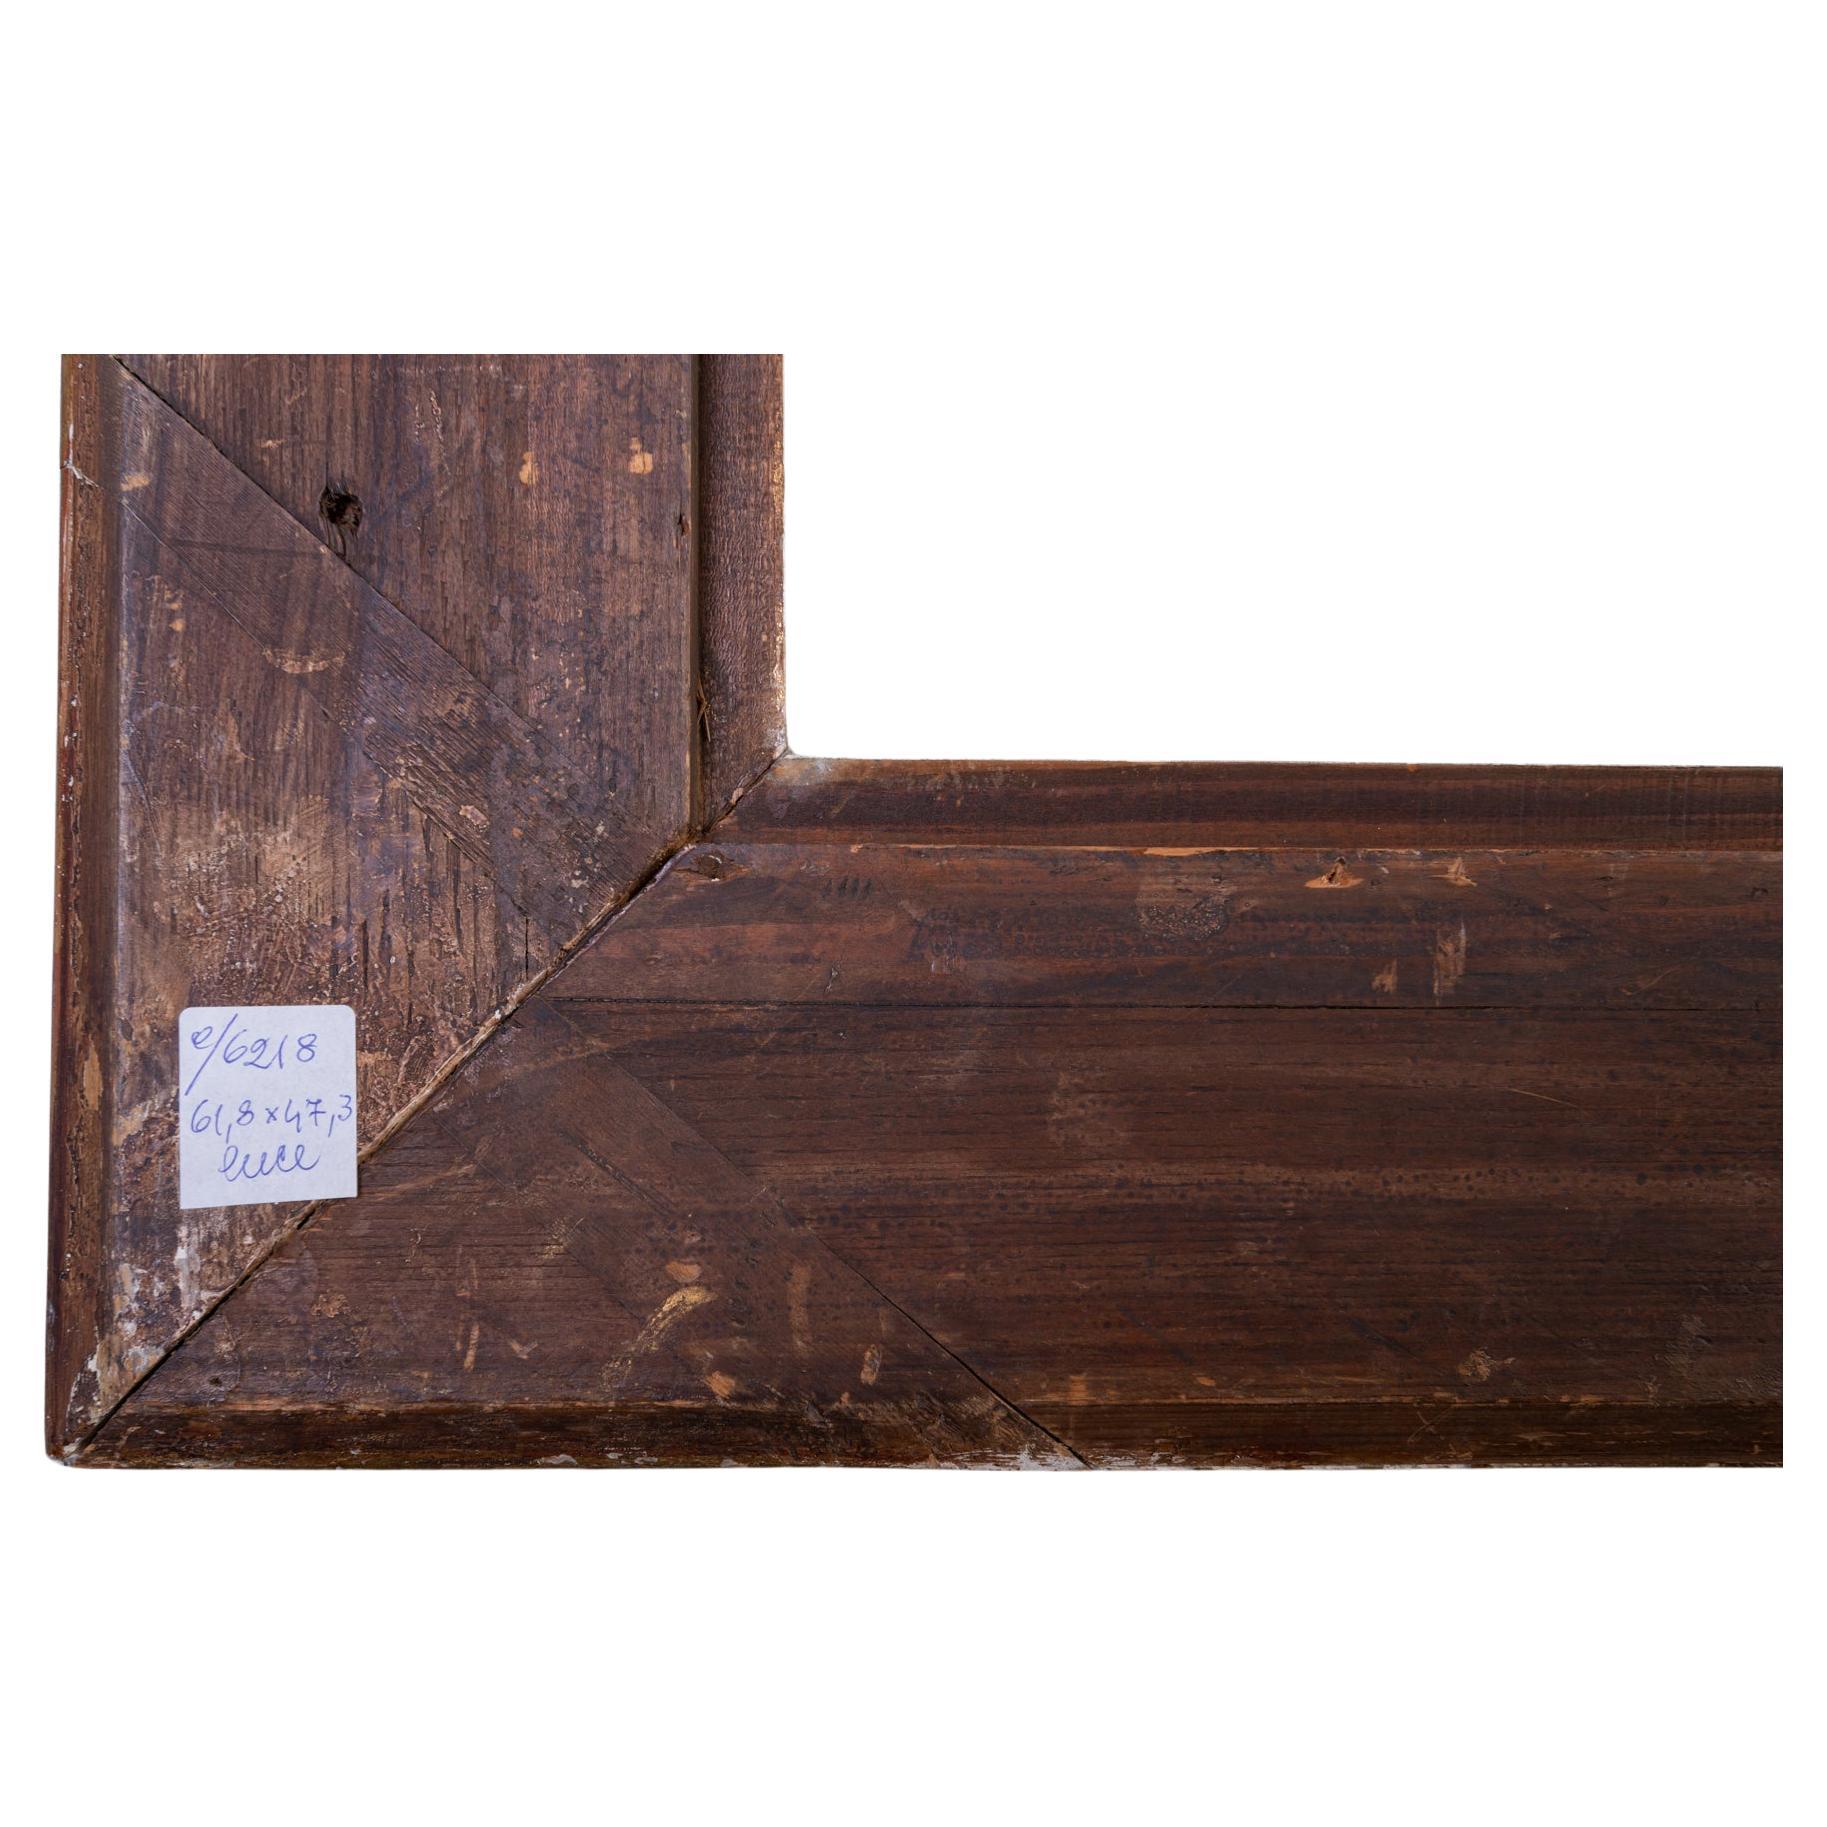 O/6218 - Ancien cadre élégant en bois doré, également pour un miroir, en bois avec feuille d'or. 
Les tailles signées sont totales ; internes  est de cm. 61,5x 47 ; avec l'intérieur visible est cm. 59 x 44,5.